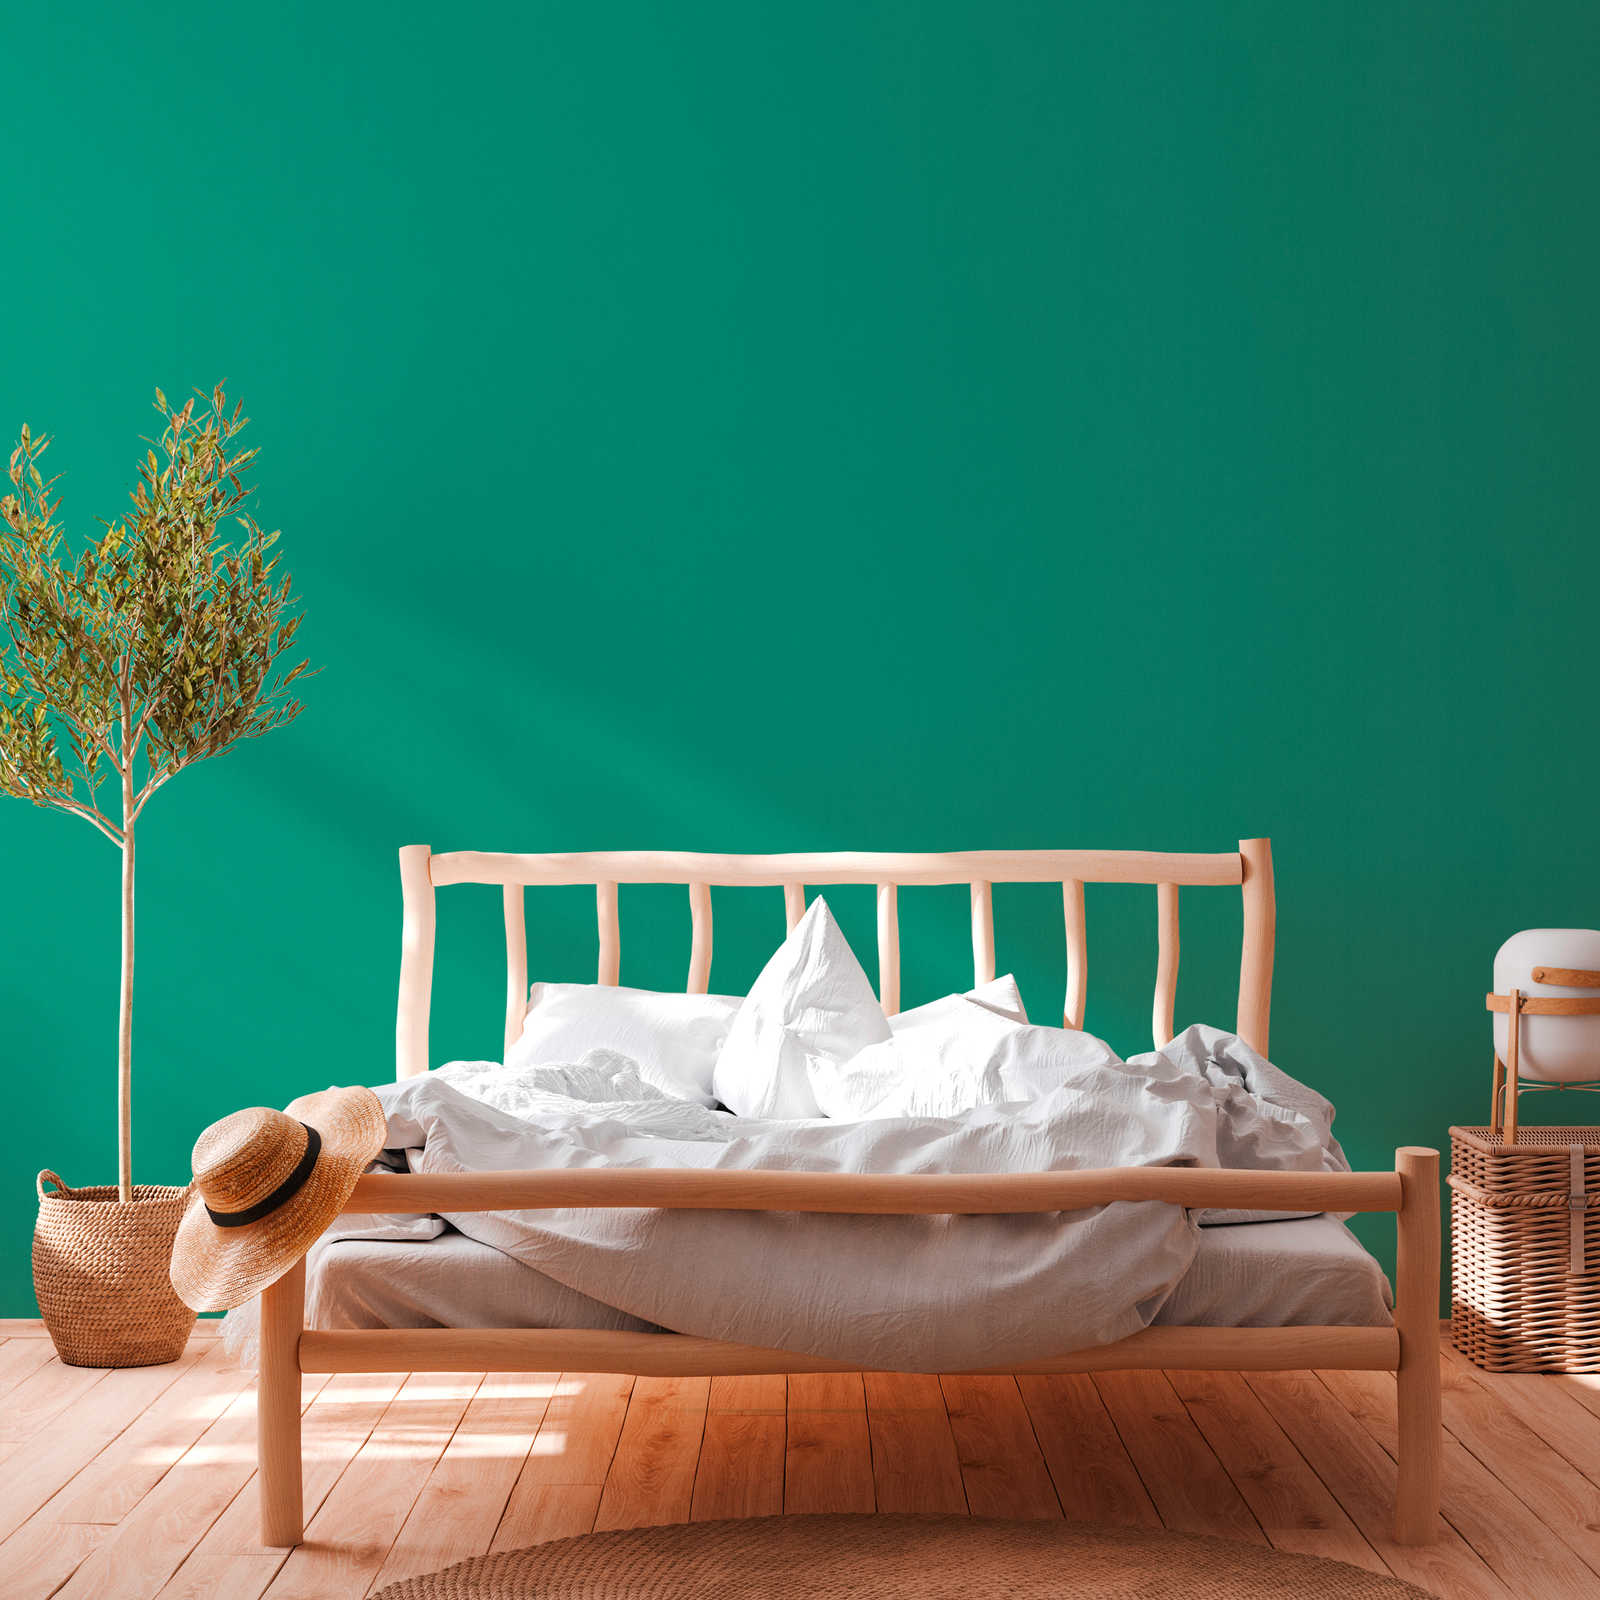             Wallpaper green with textile texture matte plain signal green
        